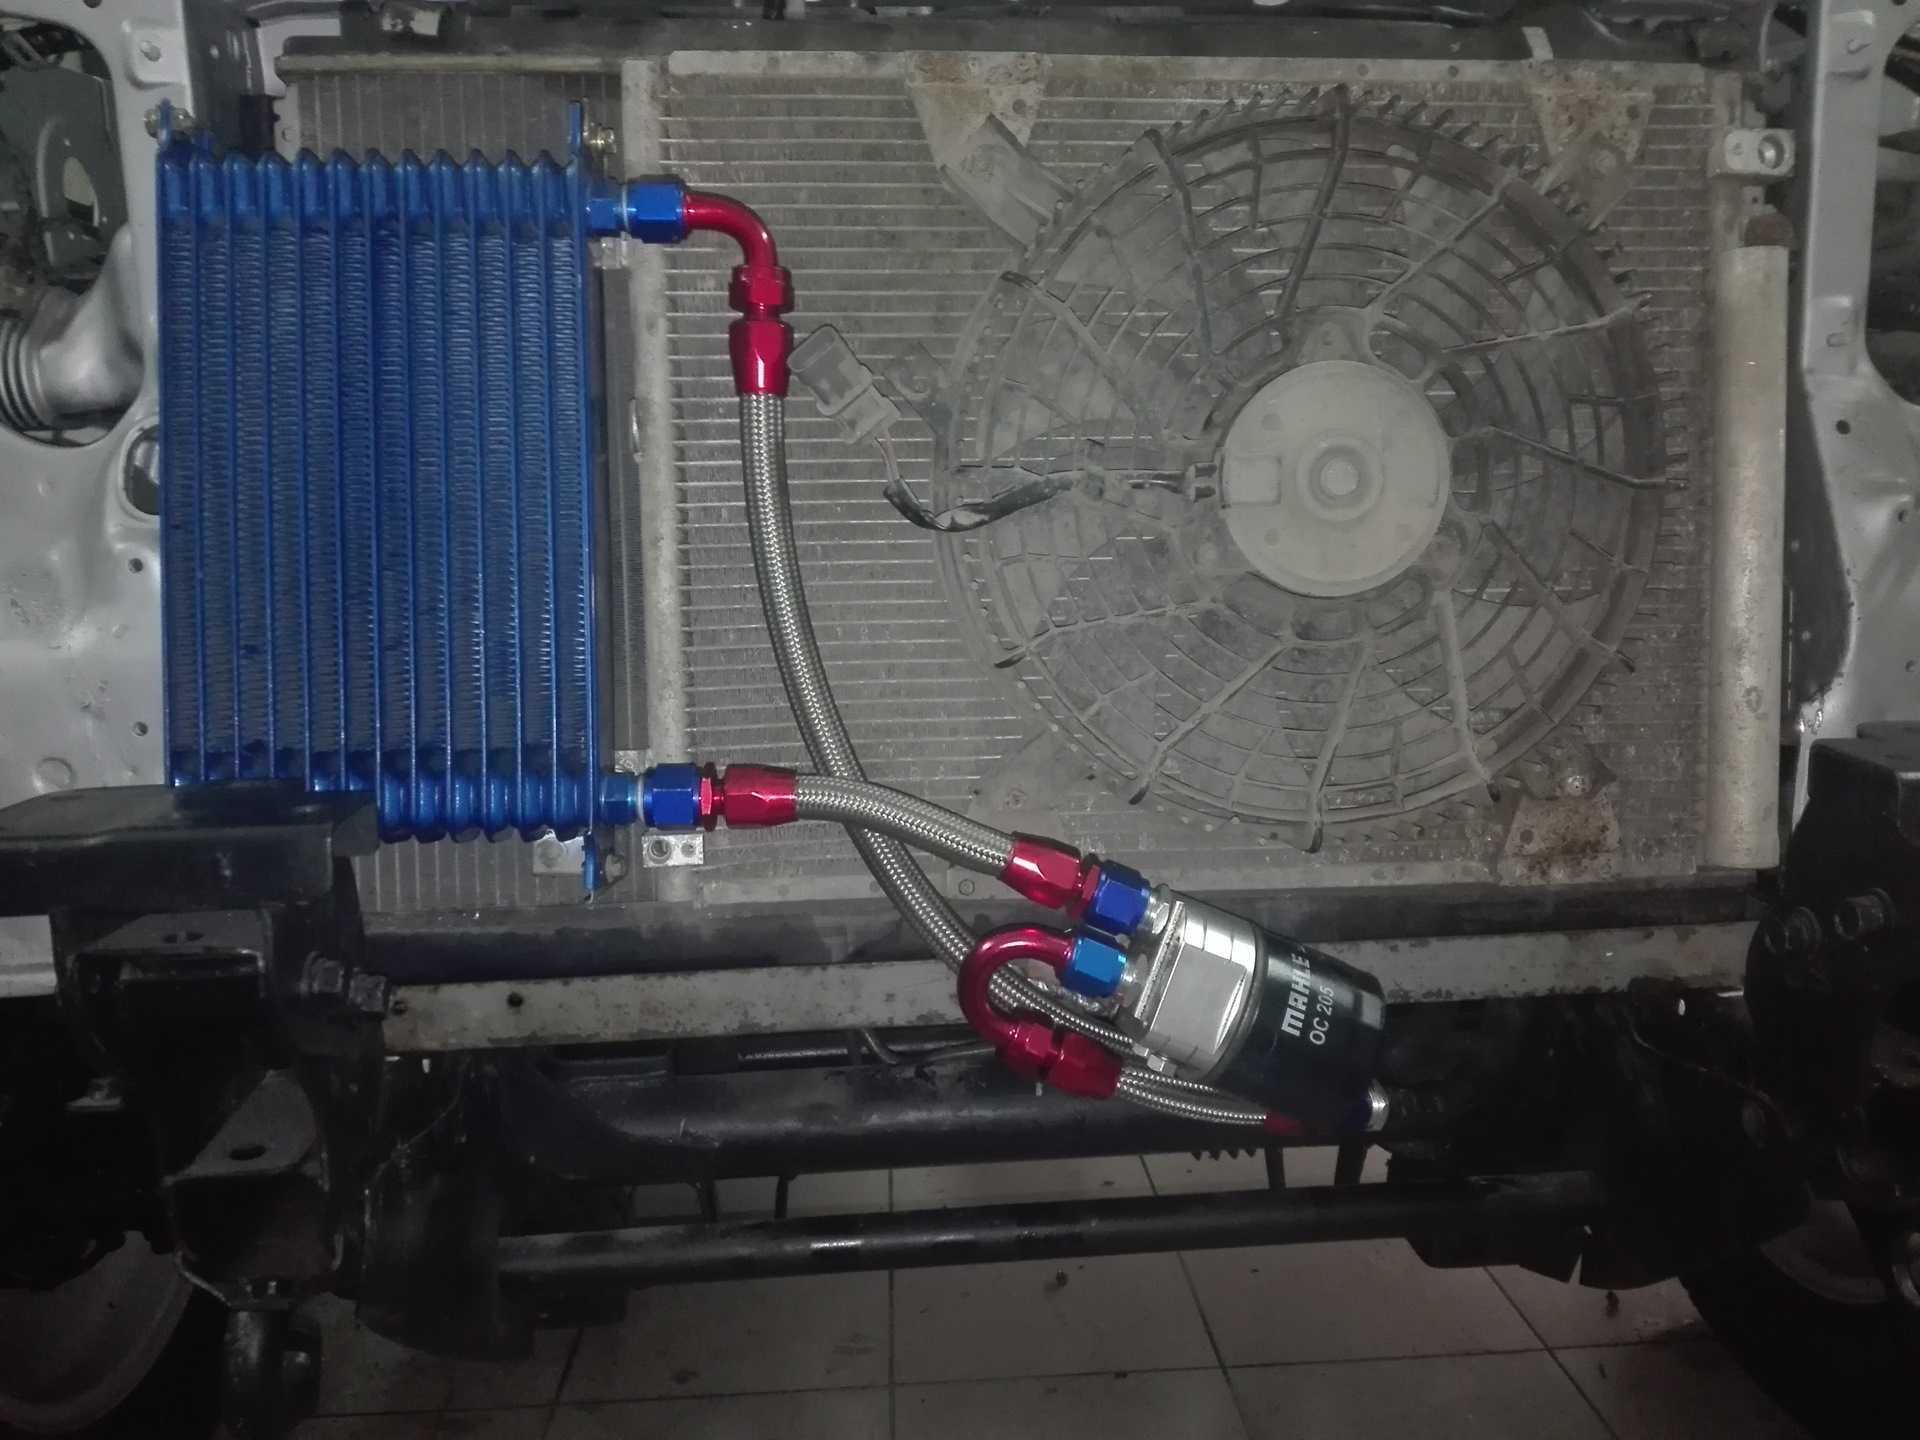 Замена и ремонт радиатора кондиционера автомобиля: как заправить фреоном, как запаять и почистить + видео